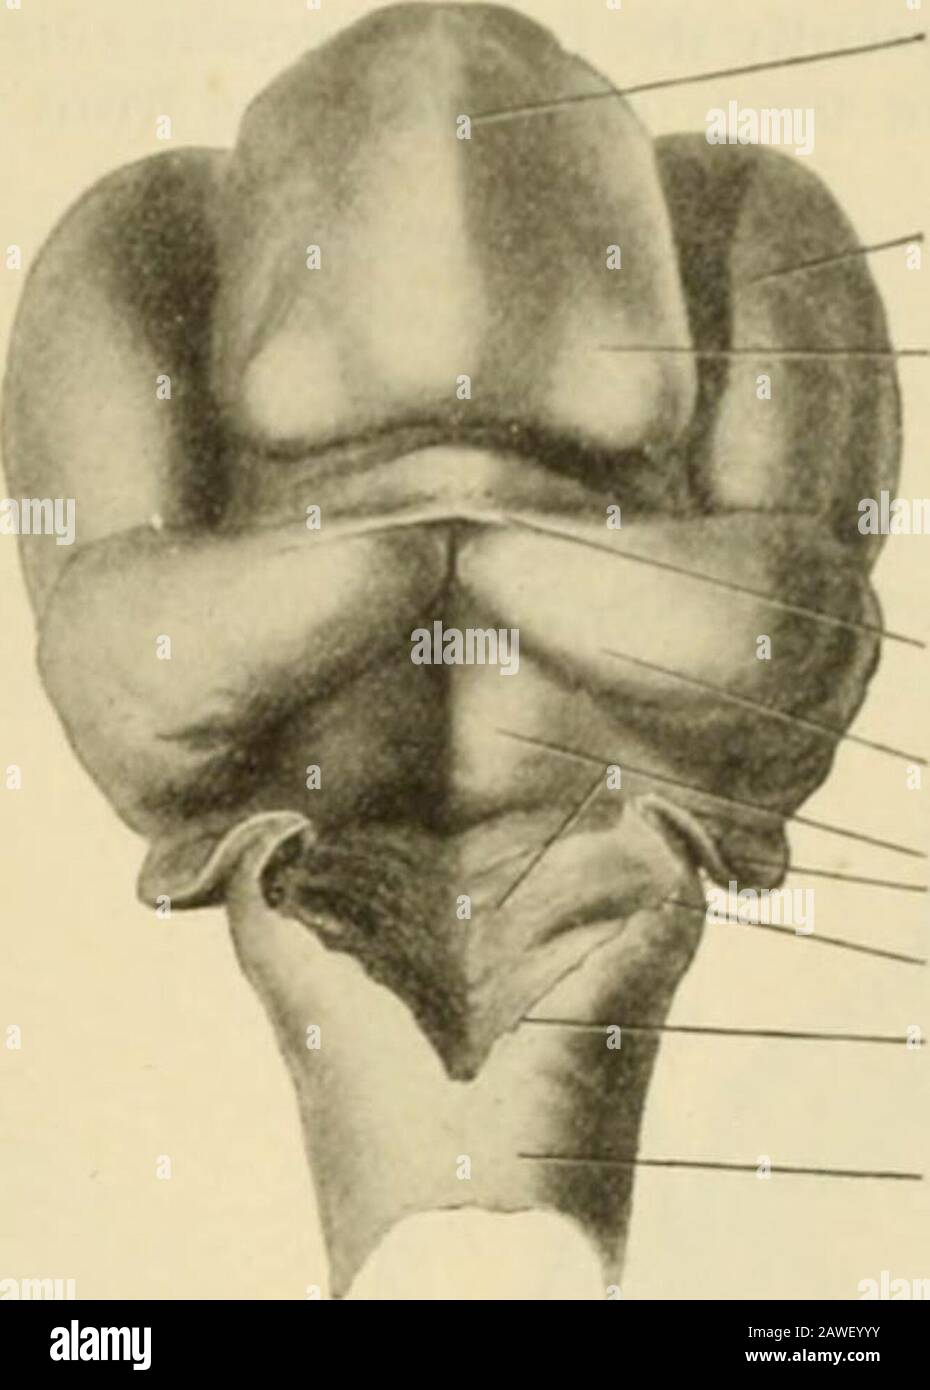 L'anatomie humaine, y compris la structure et le développement et les considérations pratiques . de manière générale, le système des cavités ventriculaires et le canal central de la moelle épinière ont été mis en communication avec l'espace lymphatique sous-arachnoïde. Un chemin est thusfourni par lequel le liquide cerebro-spinal, sécrété dans les ventricules latéraux, tiers et fourthventricules par les différents plexes choroïdes, s'échappe constamment et donc l'accumulation et la distension de prévention dans les cavités du cerveau et de la moelle épinière. LE DFAELOP.MENT DES DÉRIVÉS DU CERVEAU HIND. Dans l'esquisse générale du développement Banque D'Images